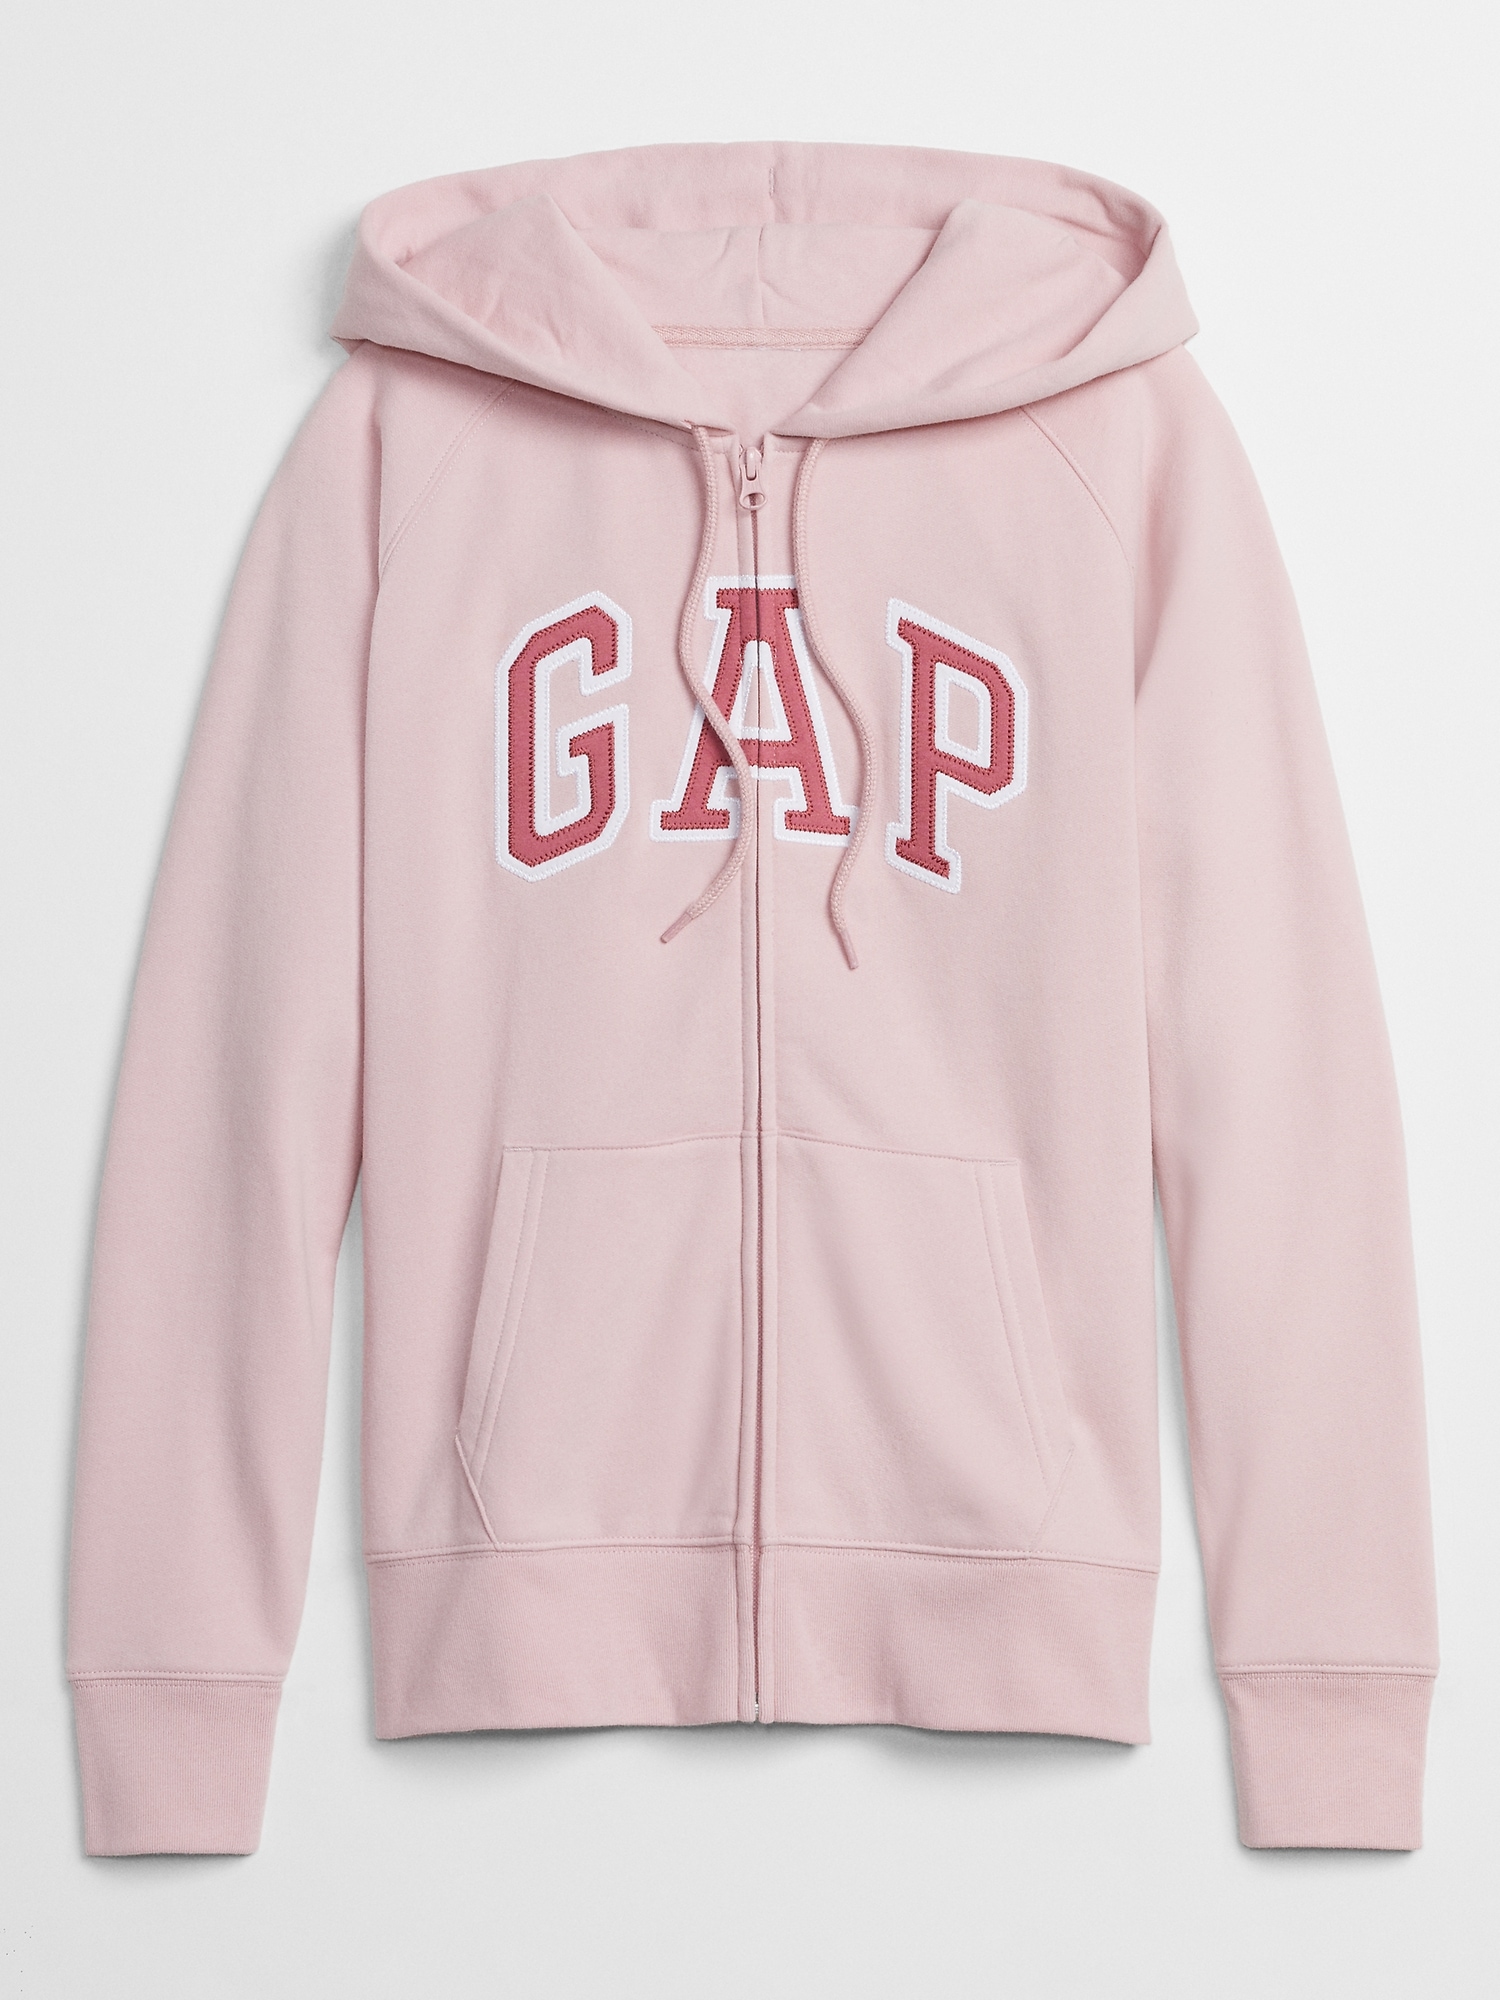 pink gap jacket